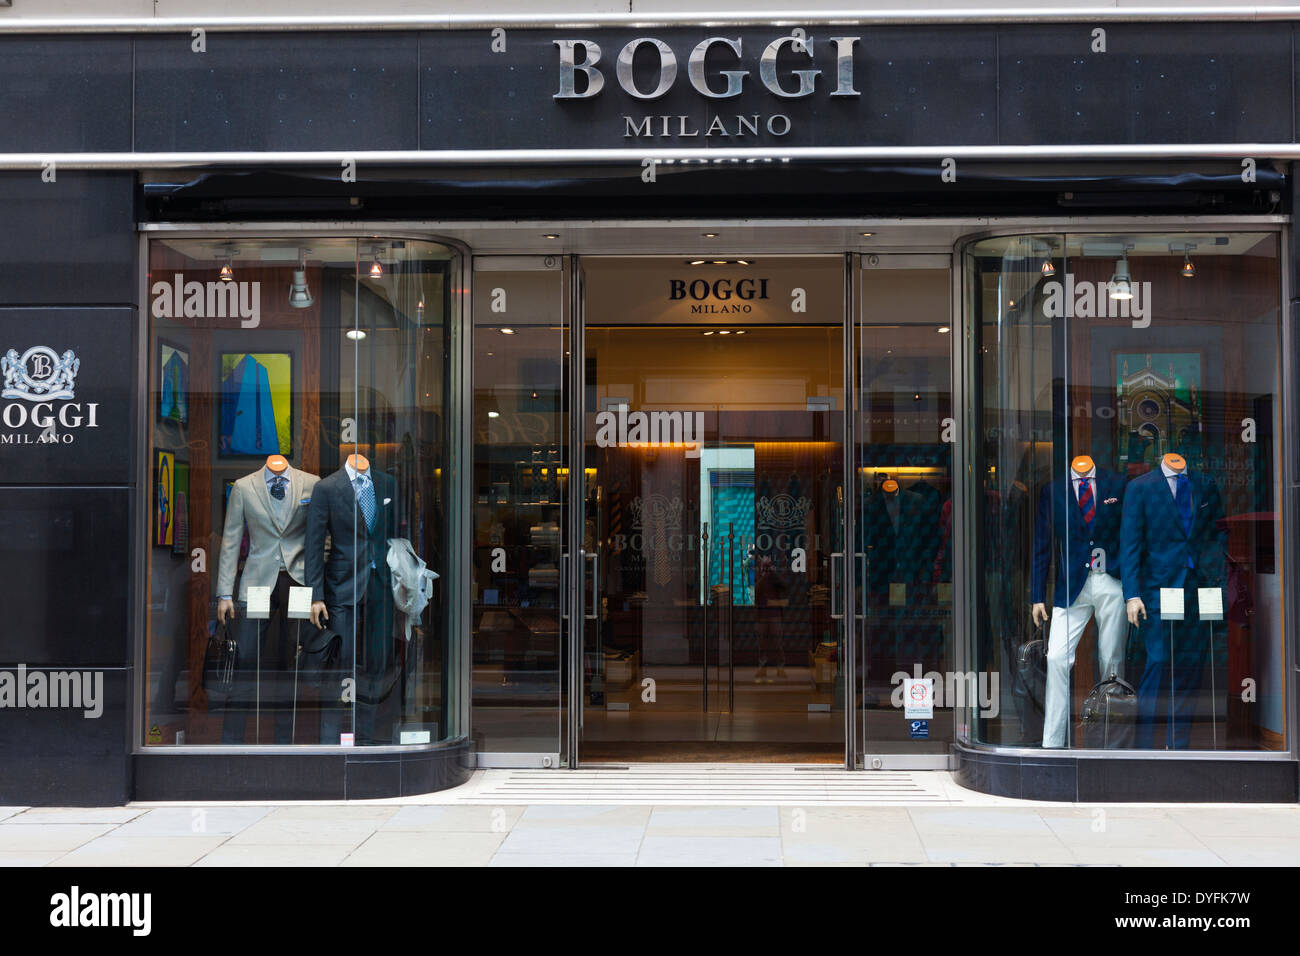 Boggi, Herren Designer Ware, Jermyn Street, London, UK Stockfotografie -  Alamy